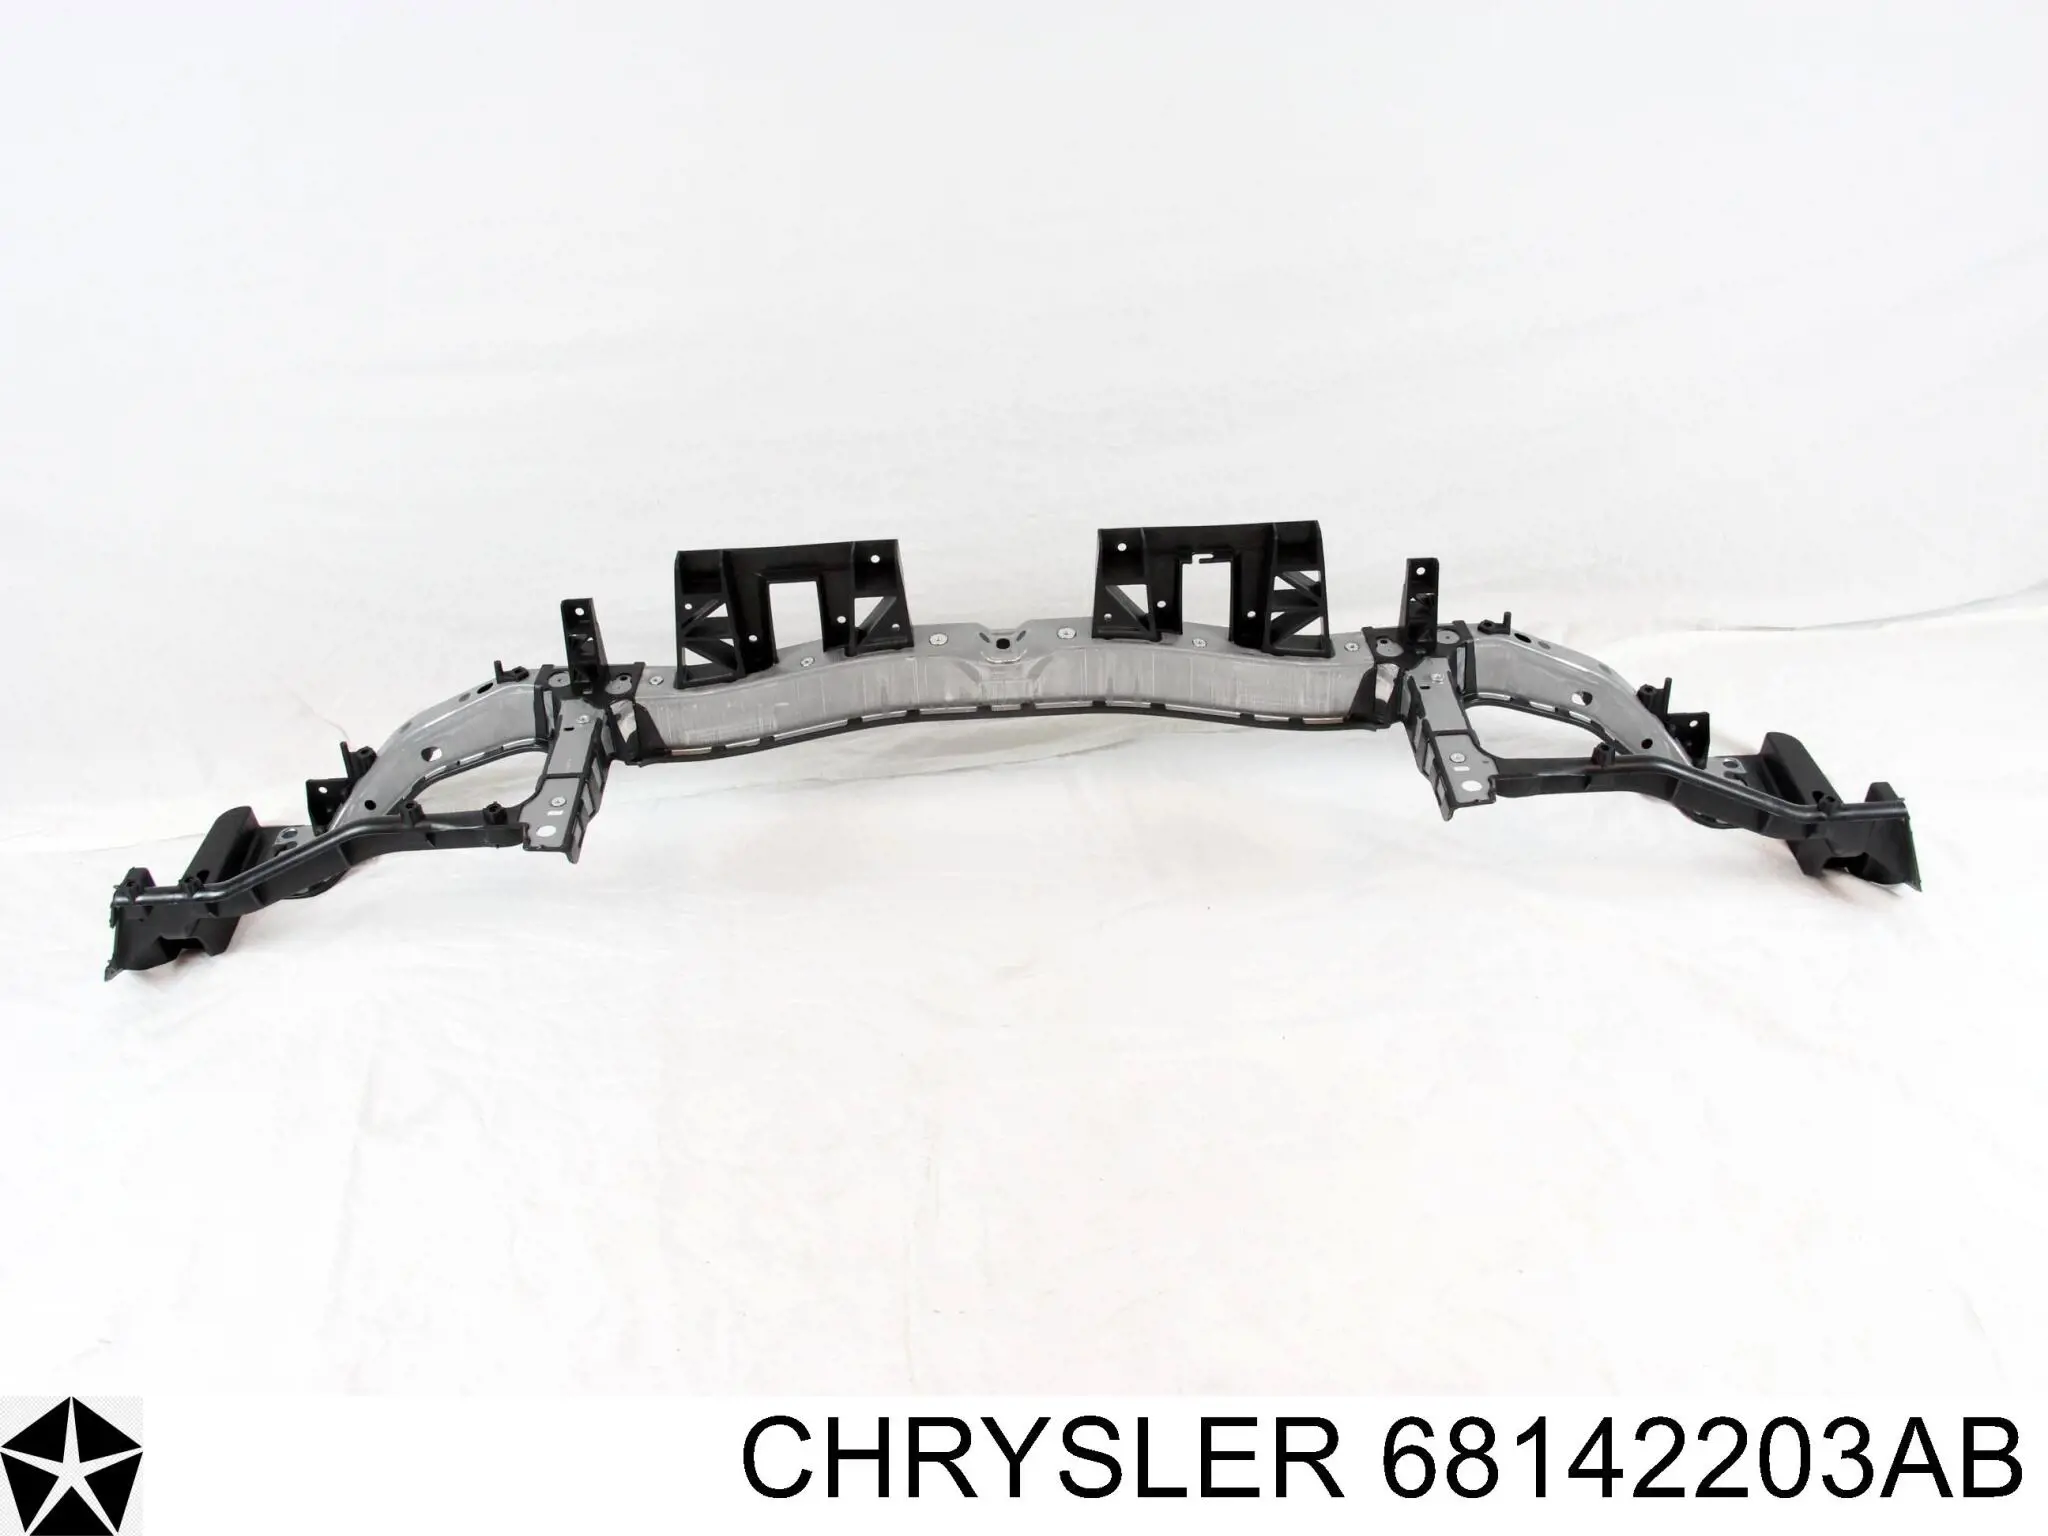 68142203AB Chrysler суппорт радиатора в сборе (монтажная панель крепления фар)